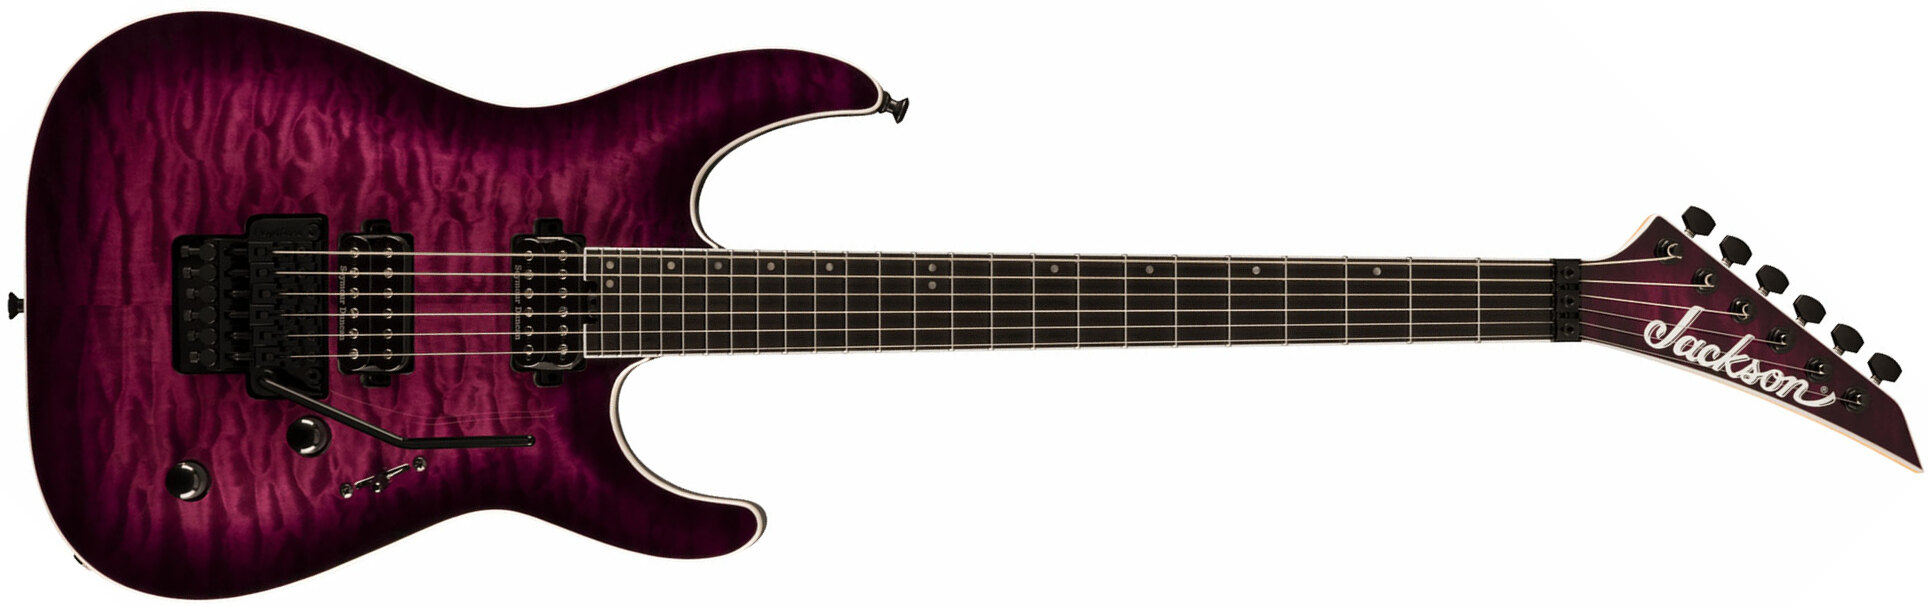 Jackson Dinky Dkaq Pro Plus 2h Seymour Duncan Fr Eb - Transparent Purple Burst - Guitare Électrique Forme Str - Main picture